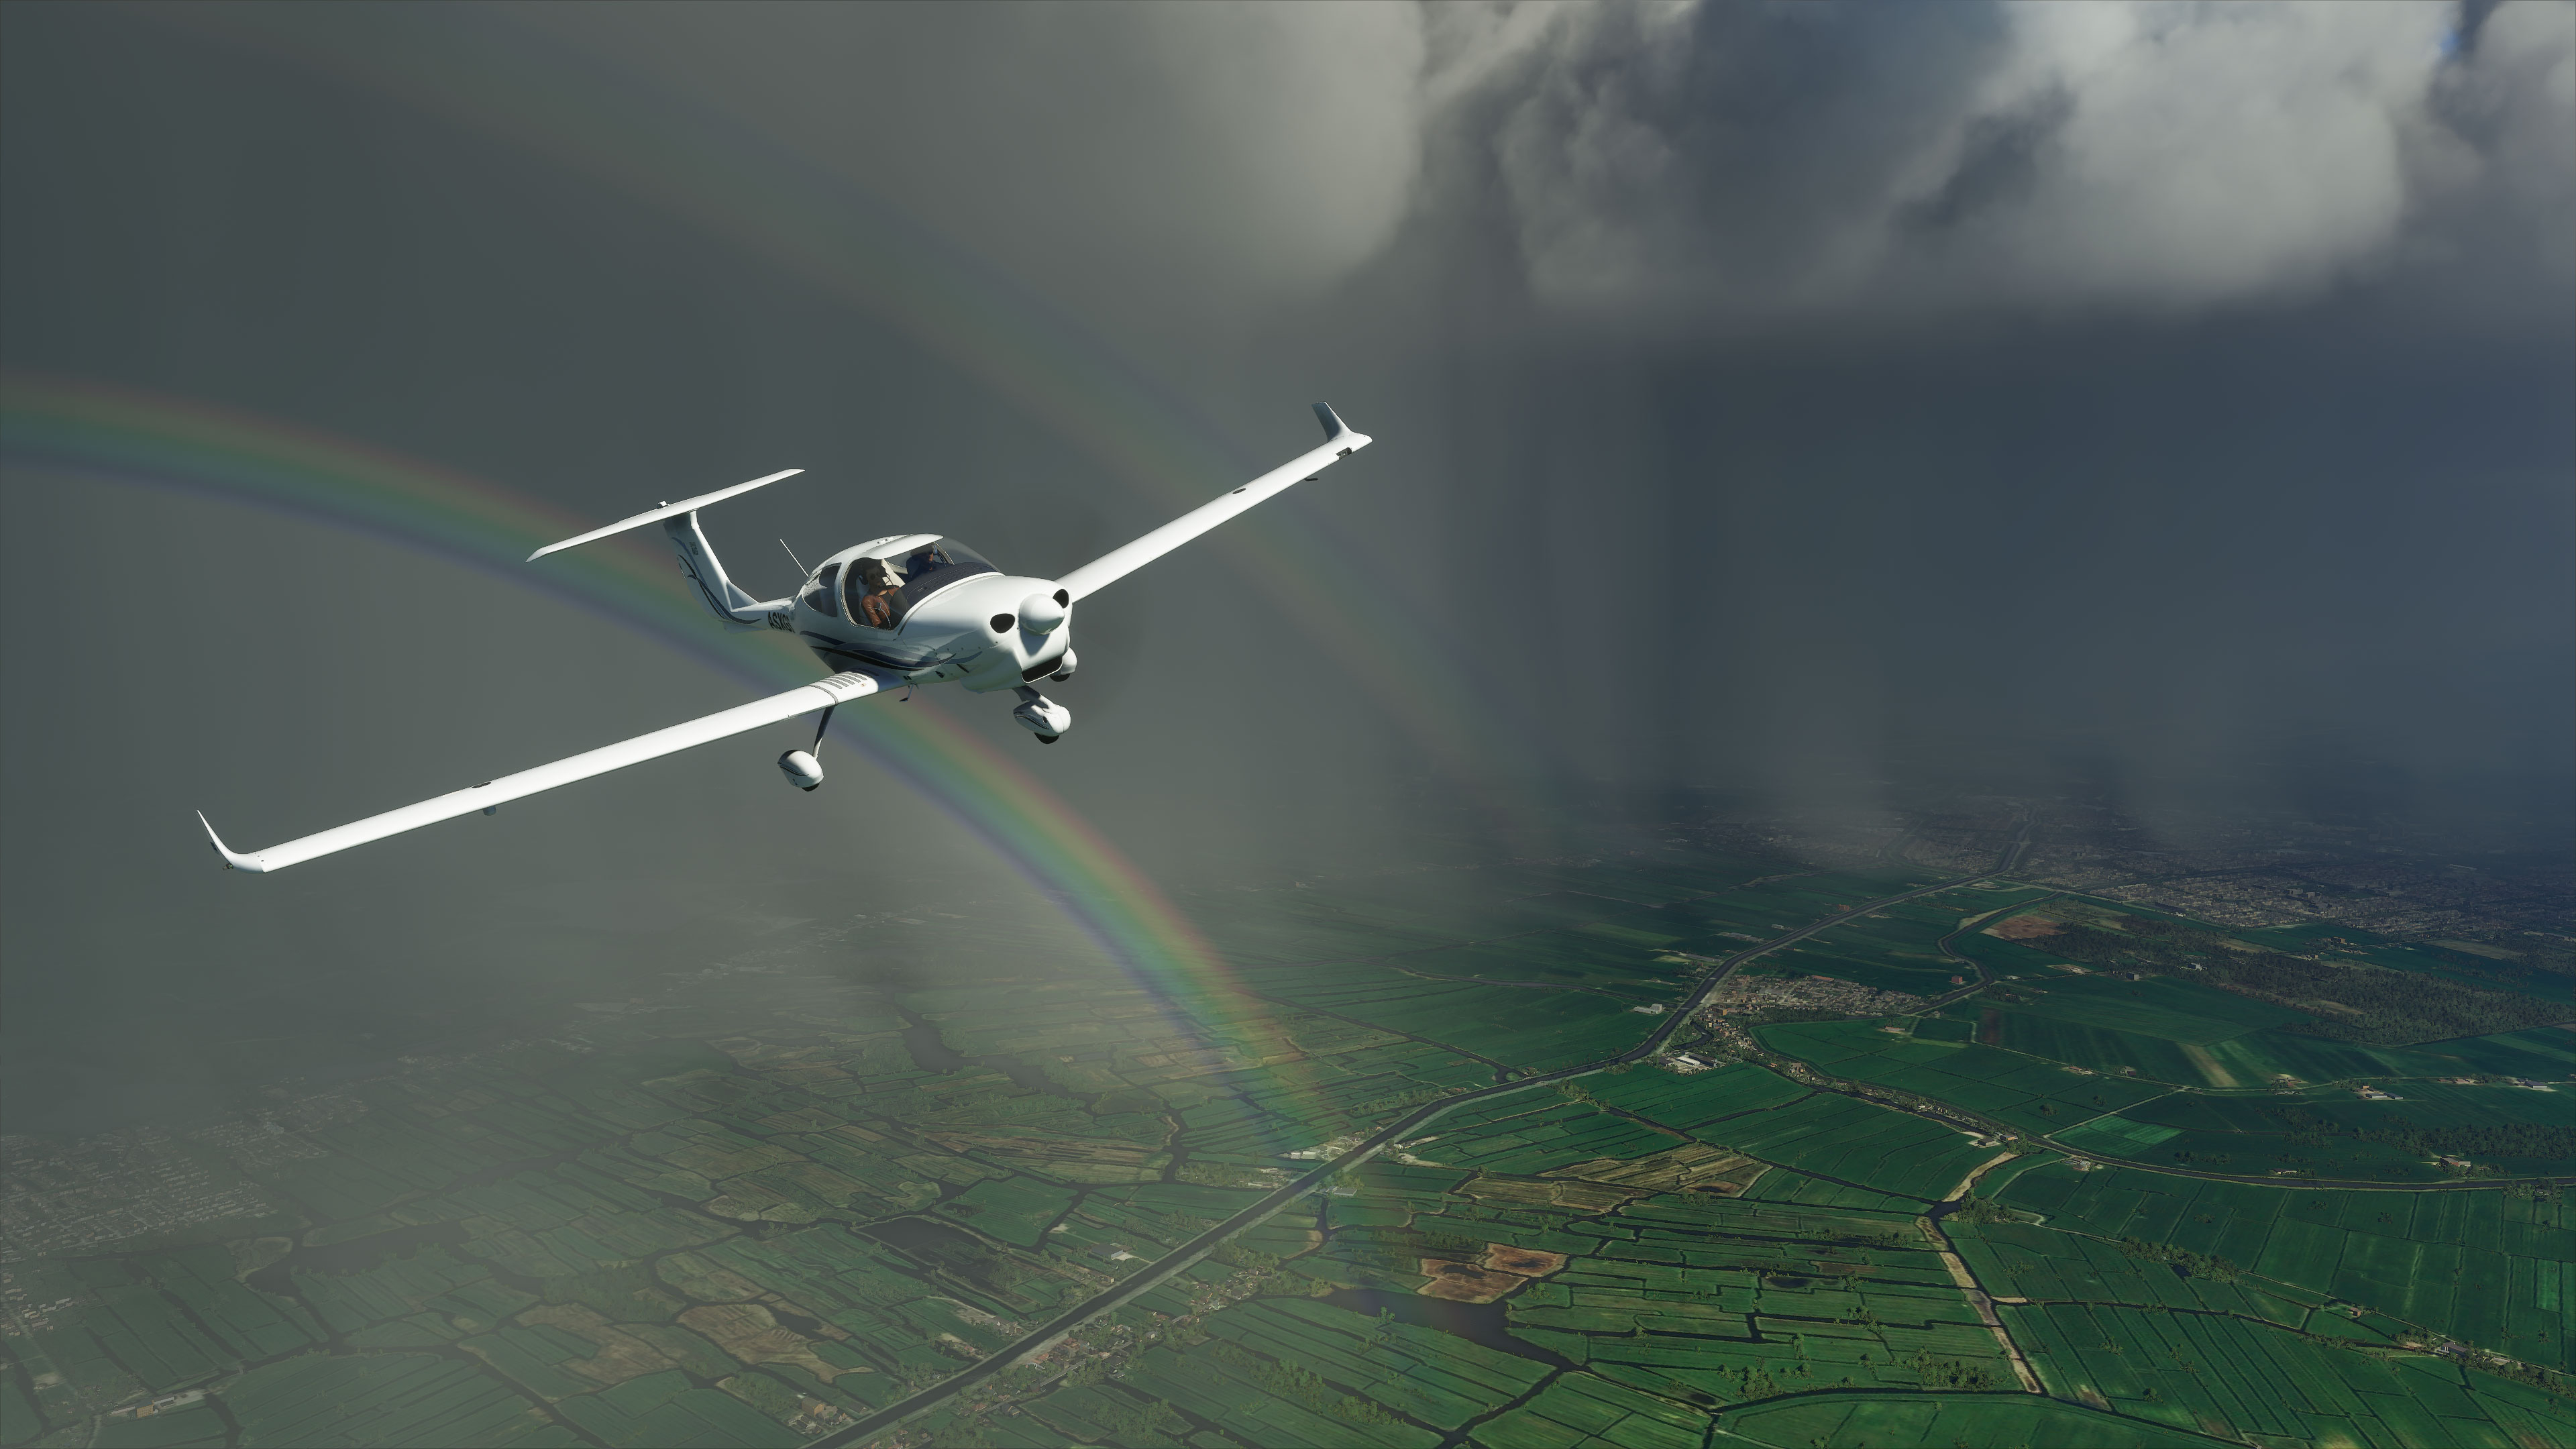 Видеоистория Microsoft Flight Simulator показывает огромный прогресс индустрии за четыре десятка лет